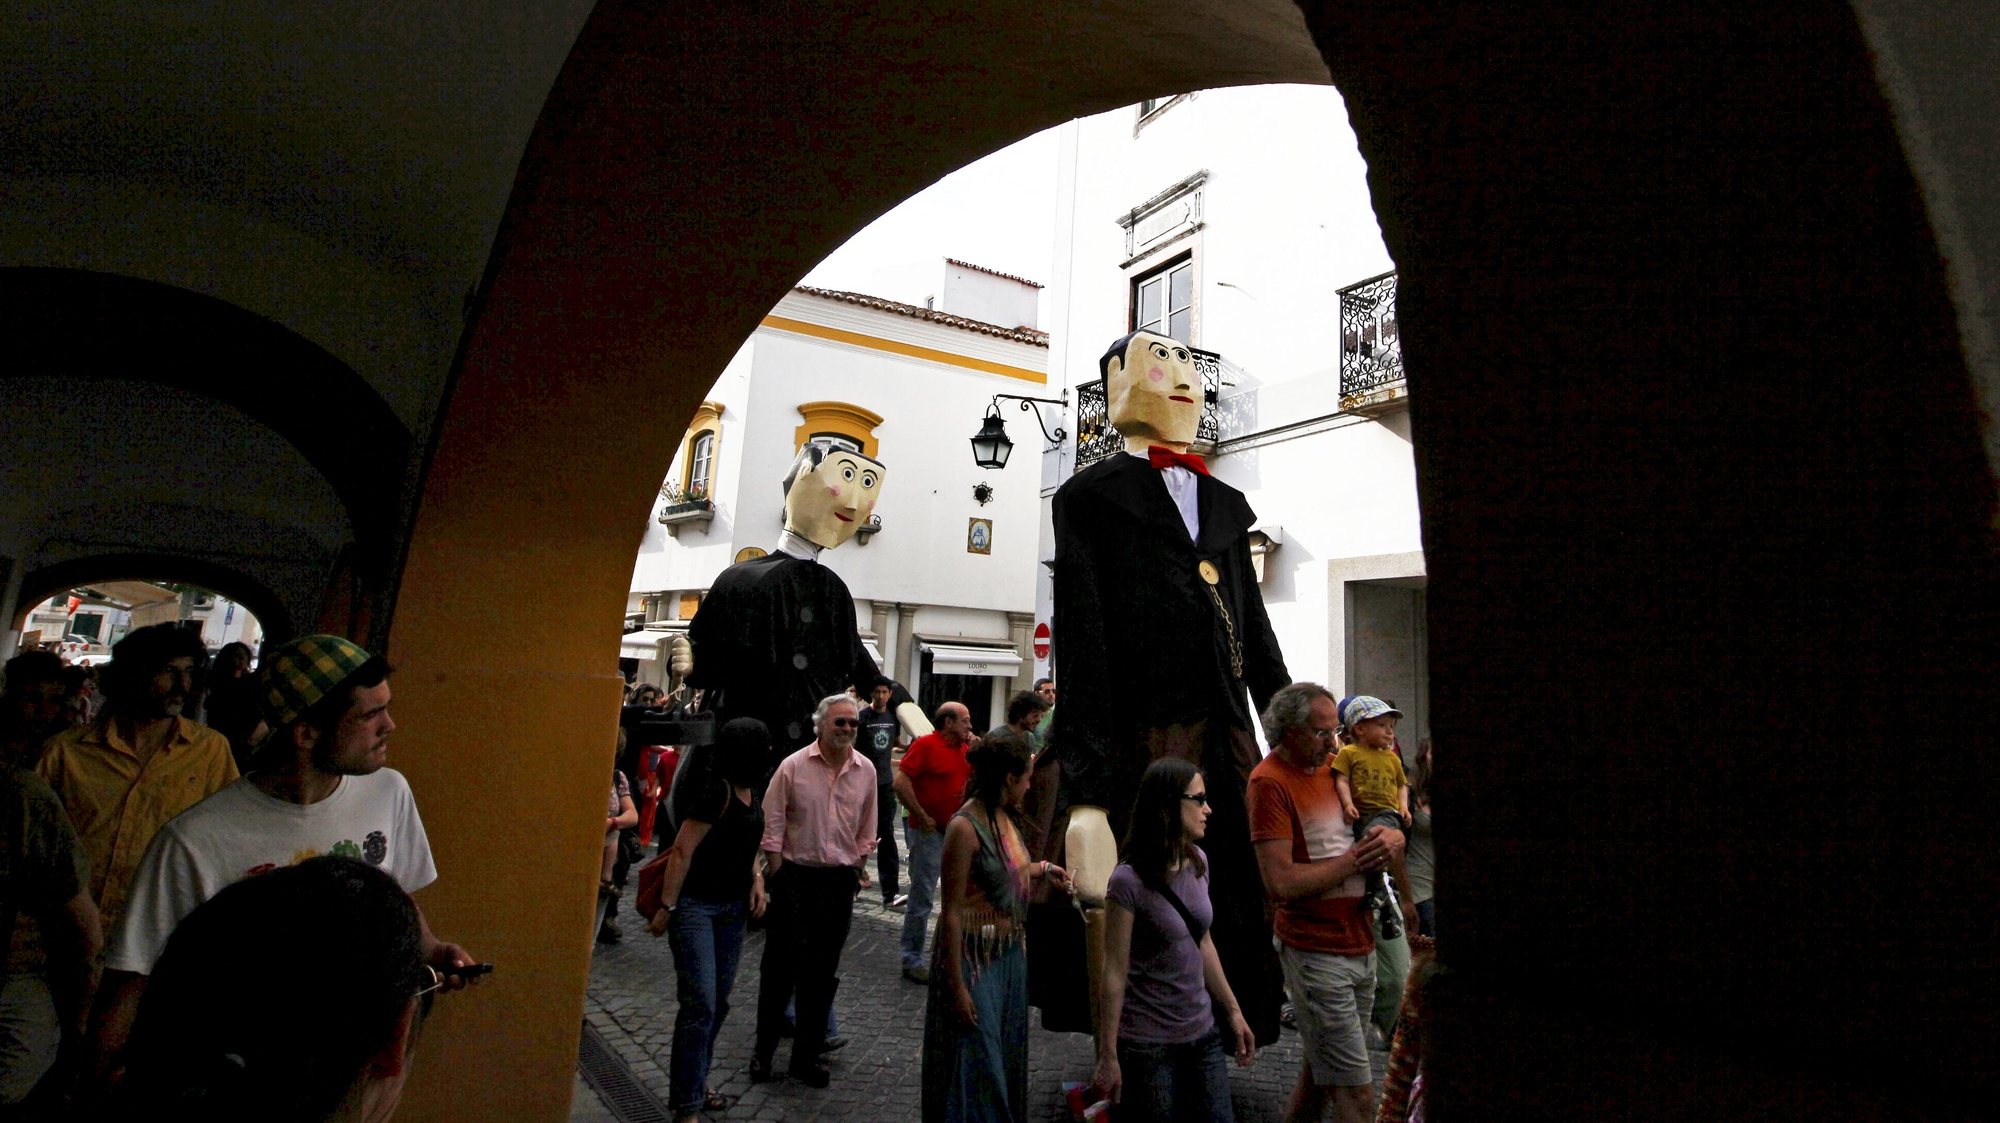 Desfile inaugural da 13a edição da Bienal Internacional de Marionetas de Évora (BIME), na Praça do Giraldo. Évora, 4 de junho de 2013. NUNO VEIGA/LUSA